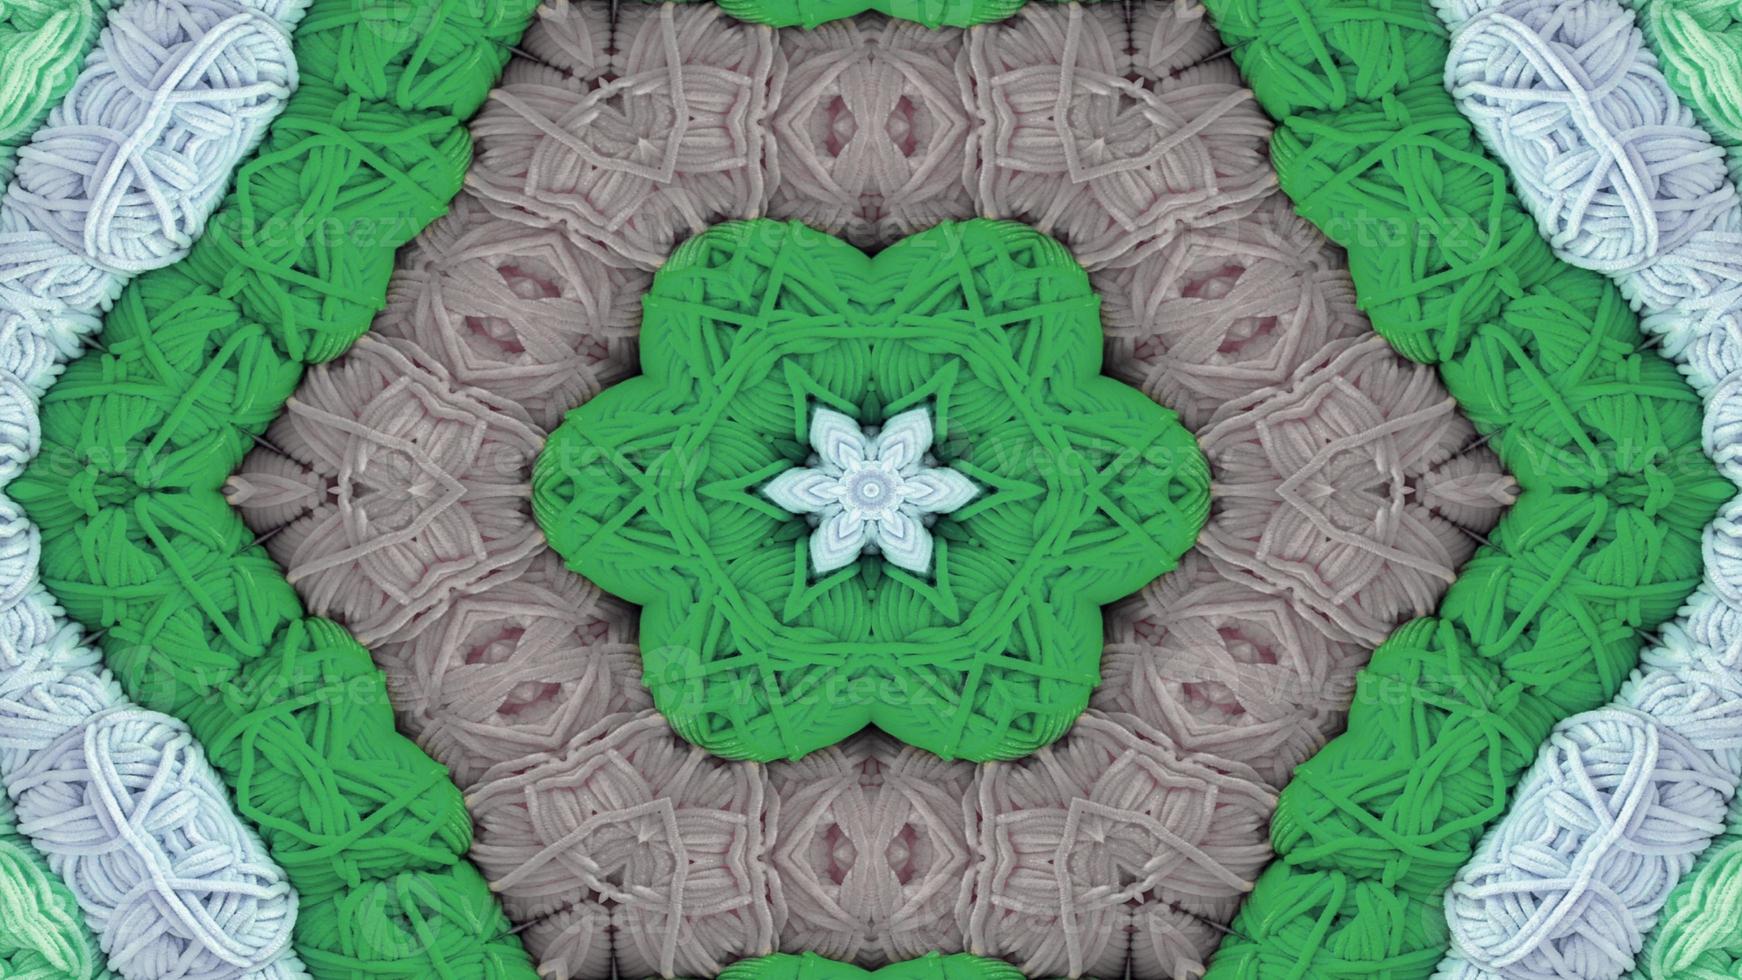 abstrakt färgrikt symmetriskt kalejdoskop foto